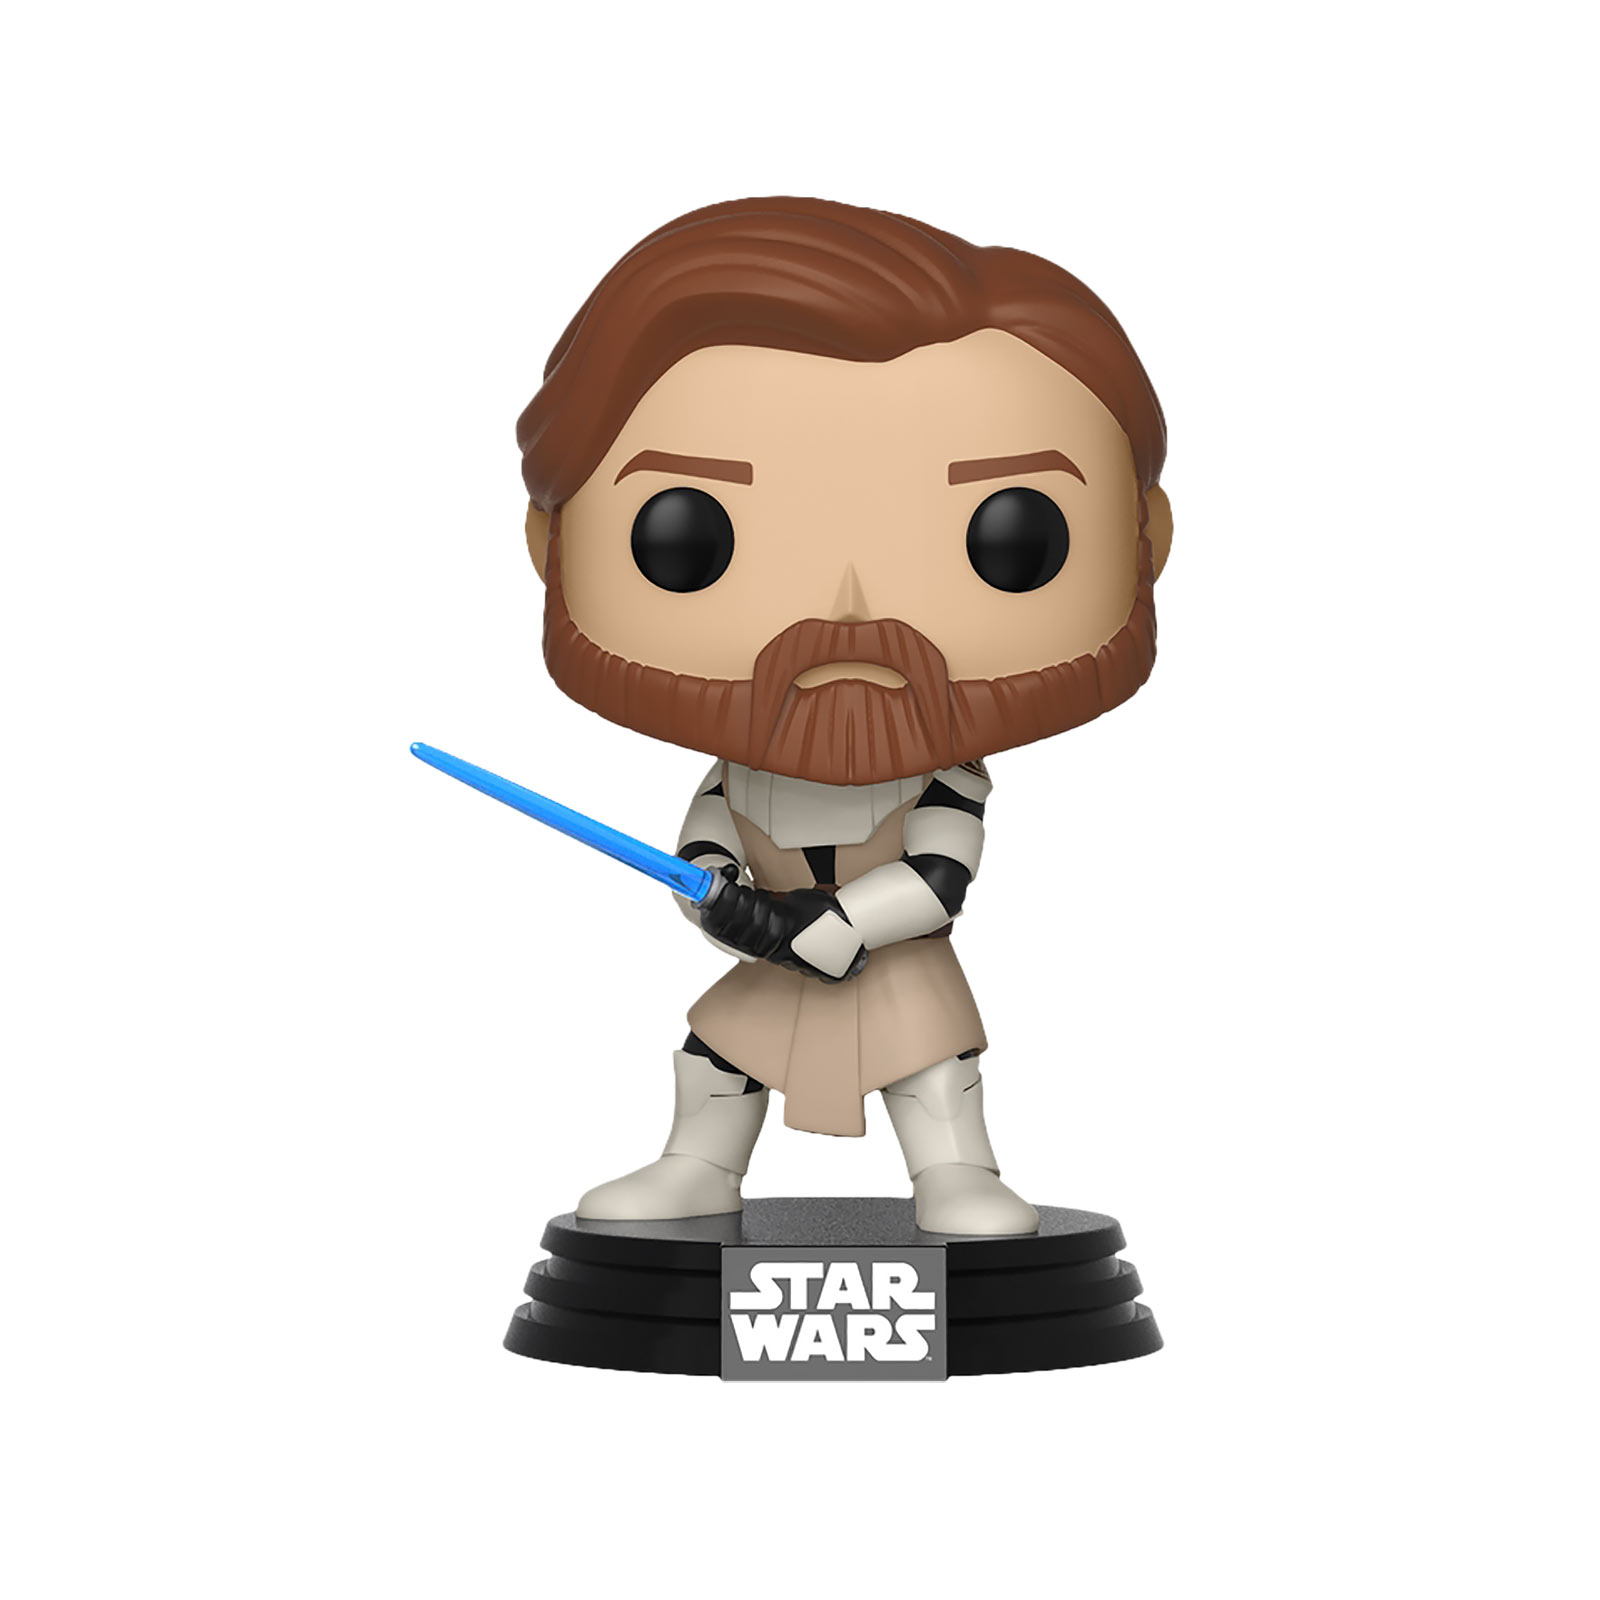 Star Wars - Clone Wars Obi Wan Kenobi Funko Pop Bobblehead Figure